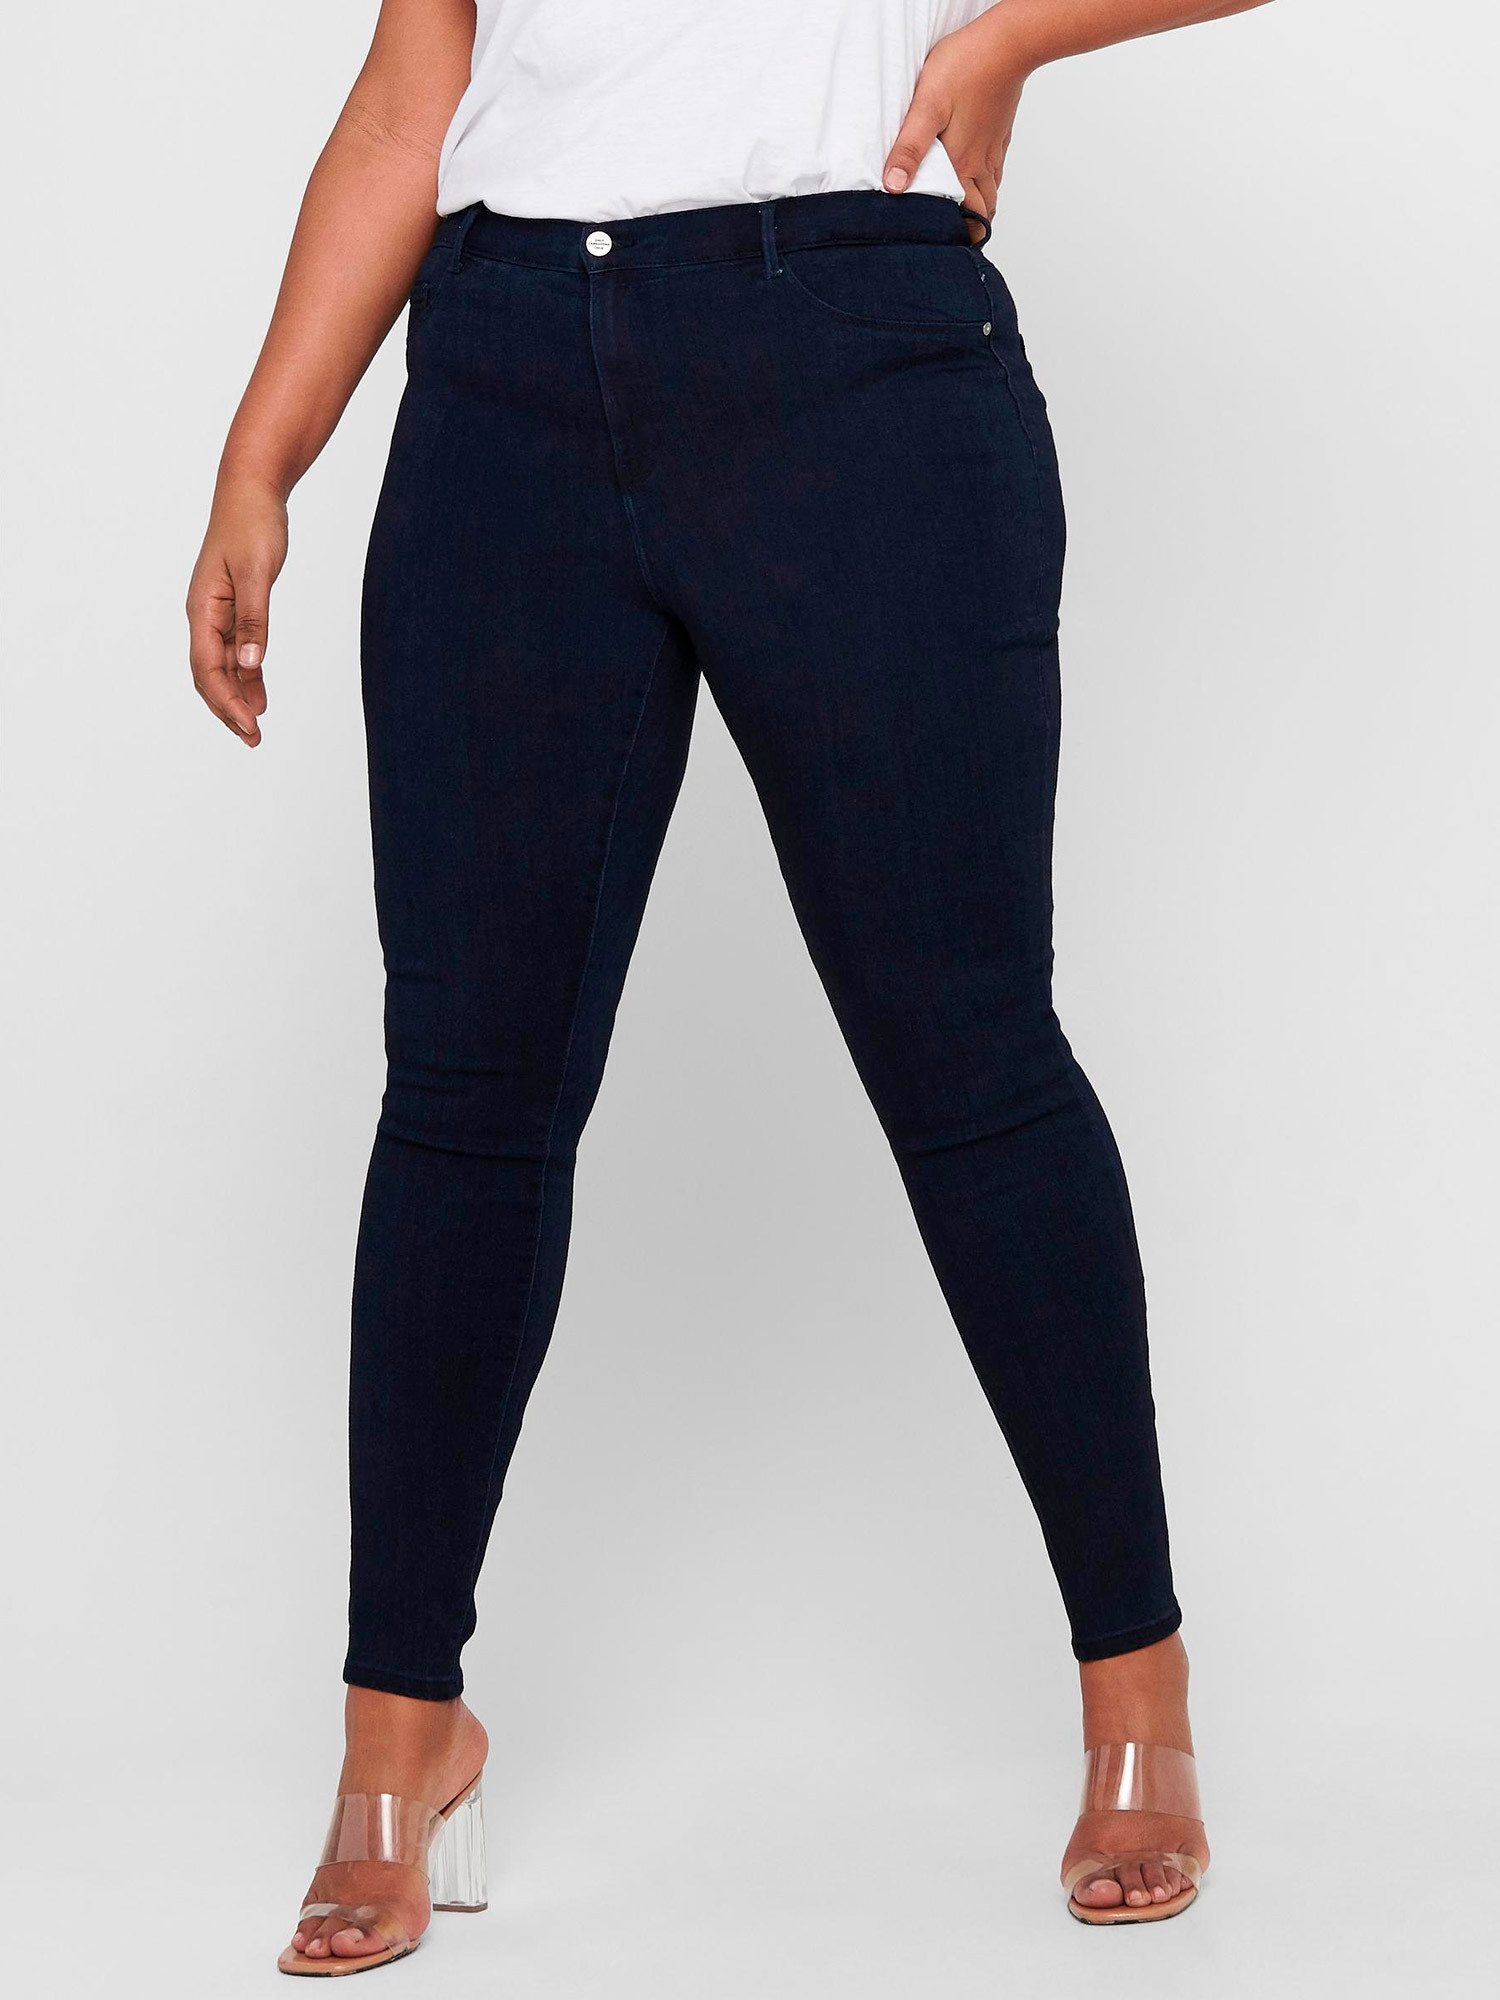 Car ANNA - Mörkblå stretch jeans med 3 knappar och smala ben